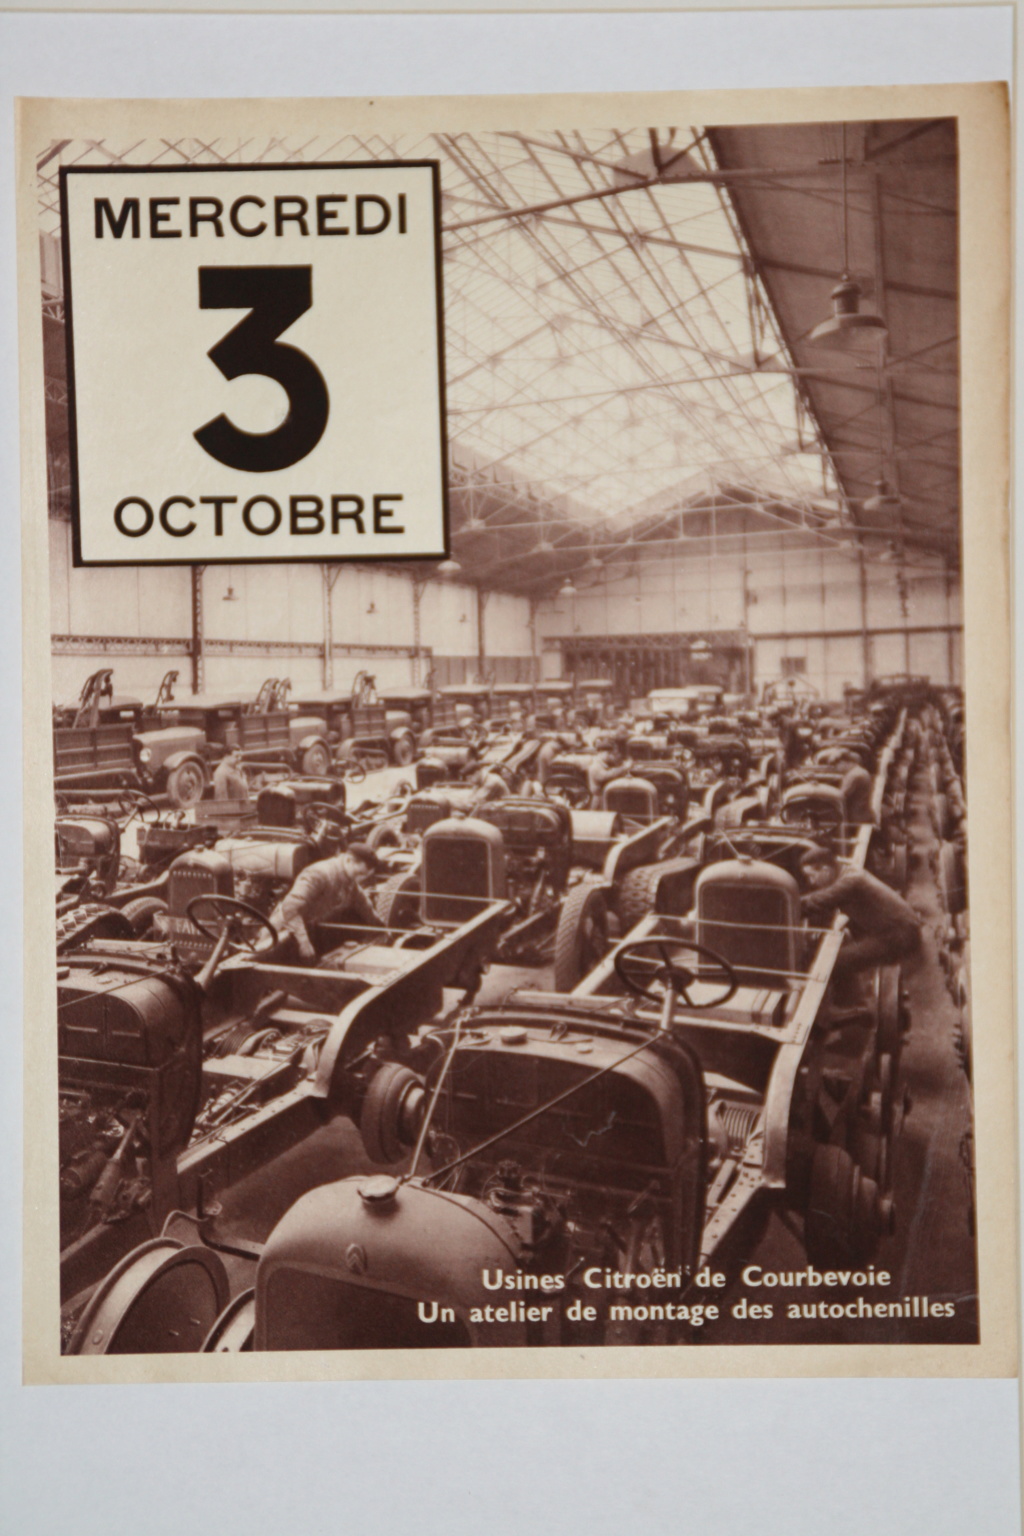 Les auto-chenilles Citroën  - Page 3 19341010